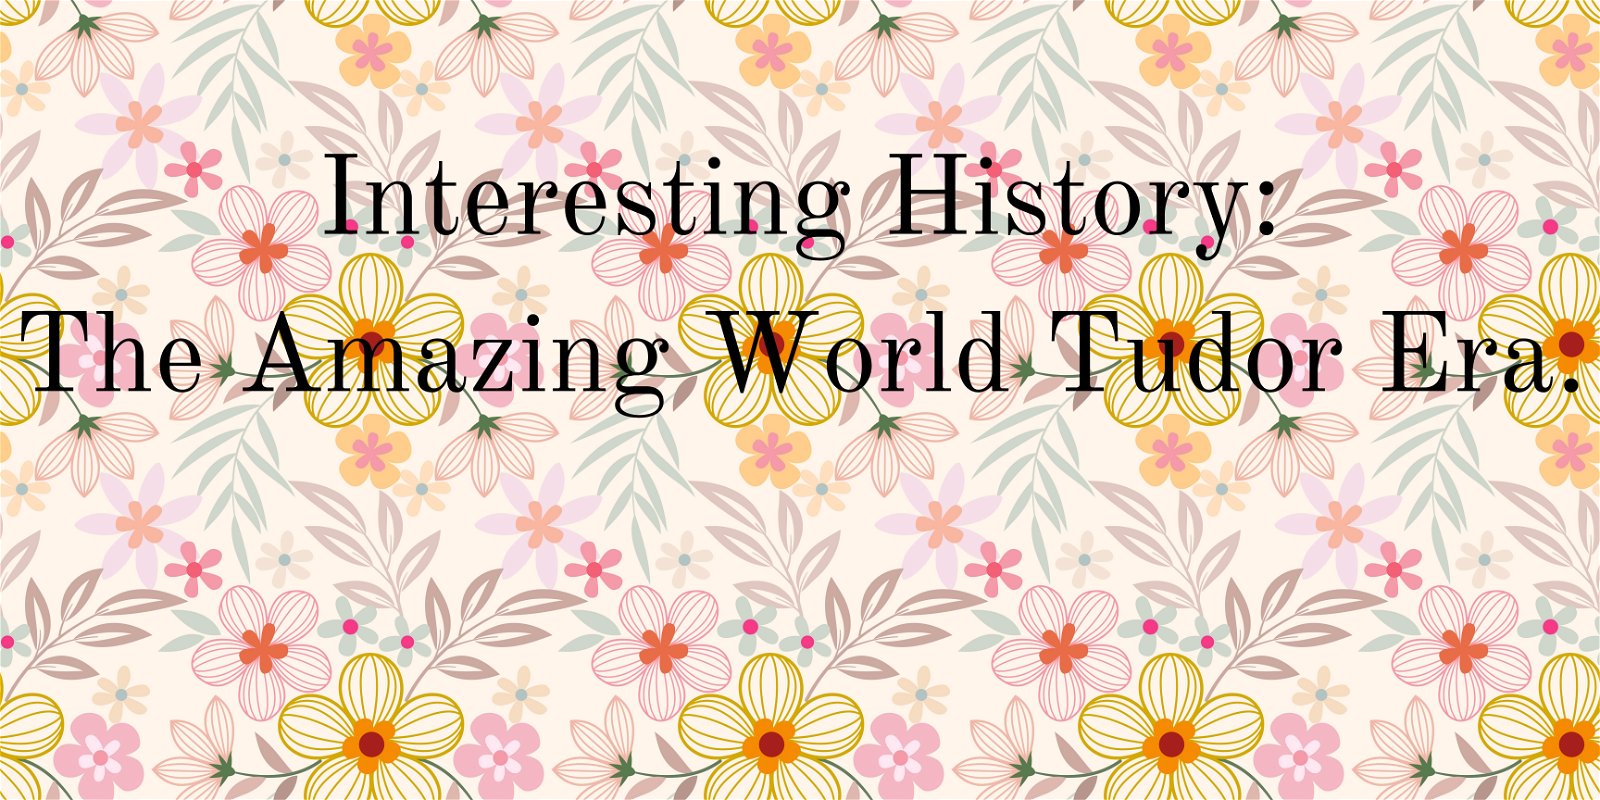 Interesting History: The Amazing World of the Tudor Era.